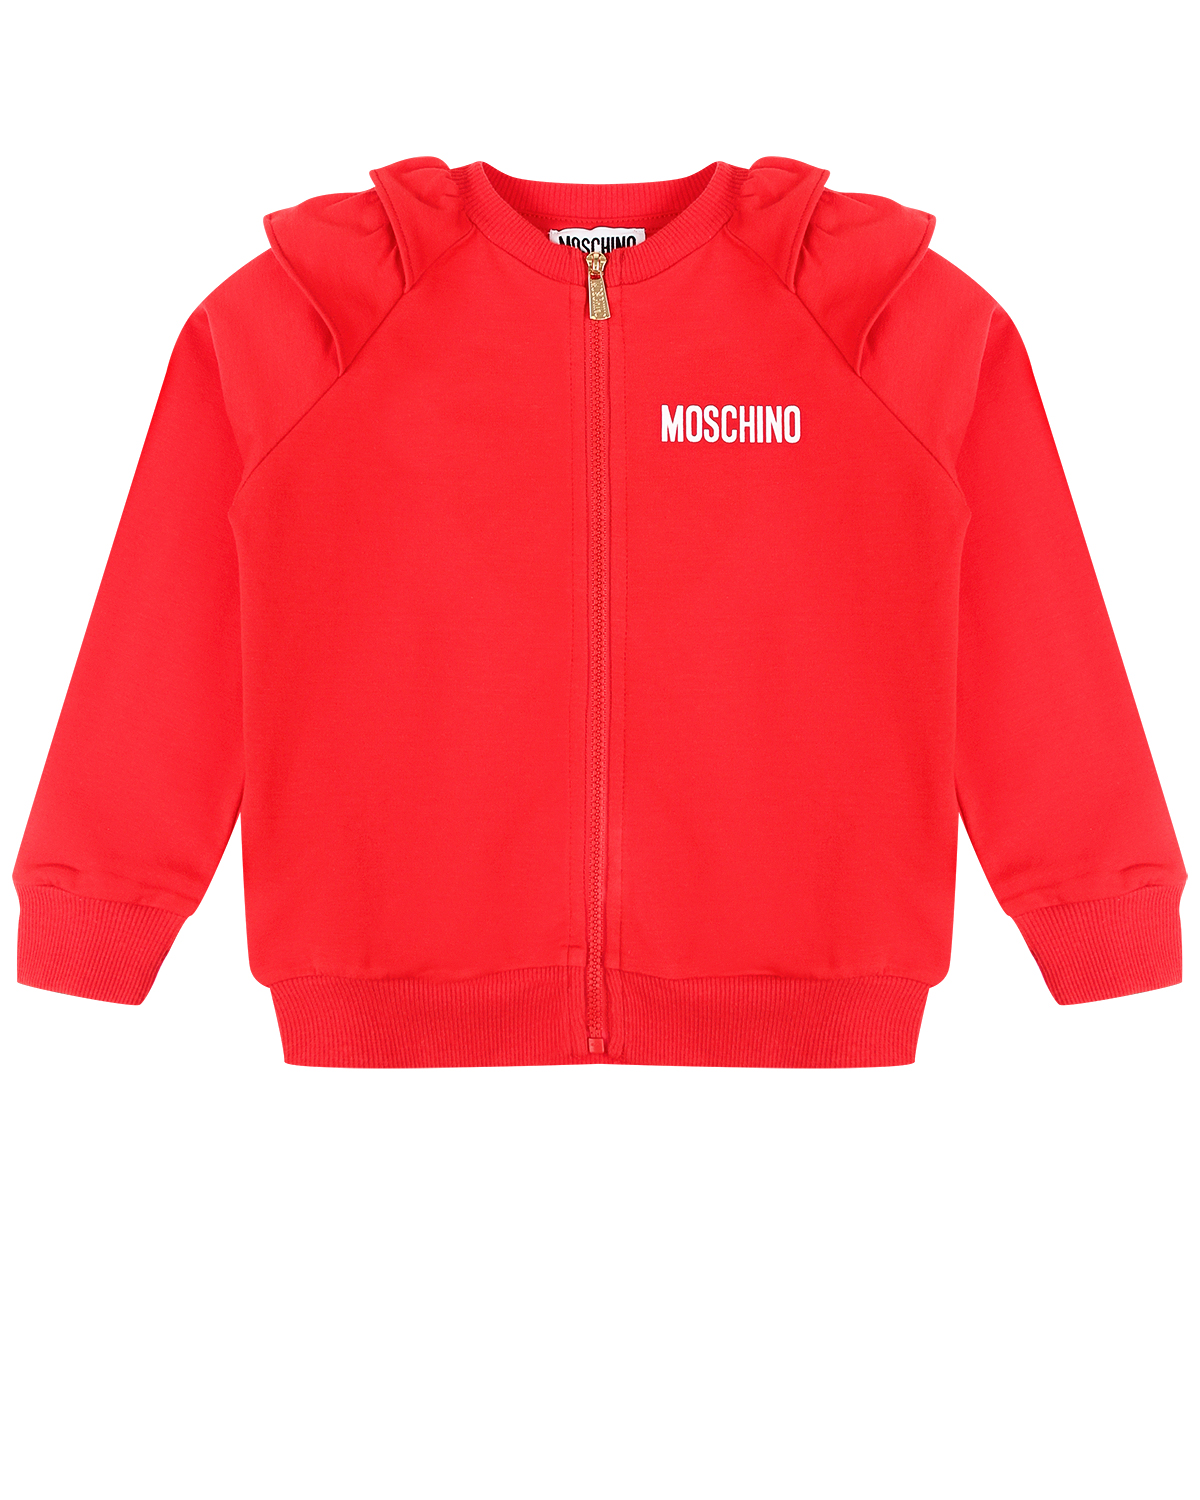 Красная спортивная куртка с рюшами на плечах Moschino детская